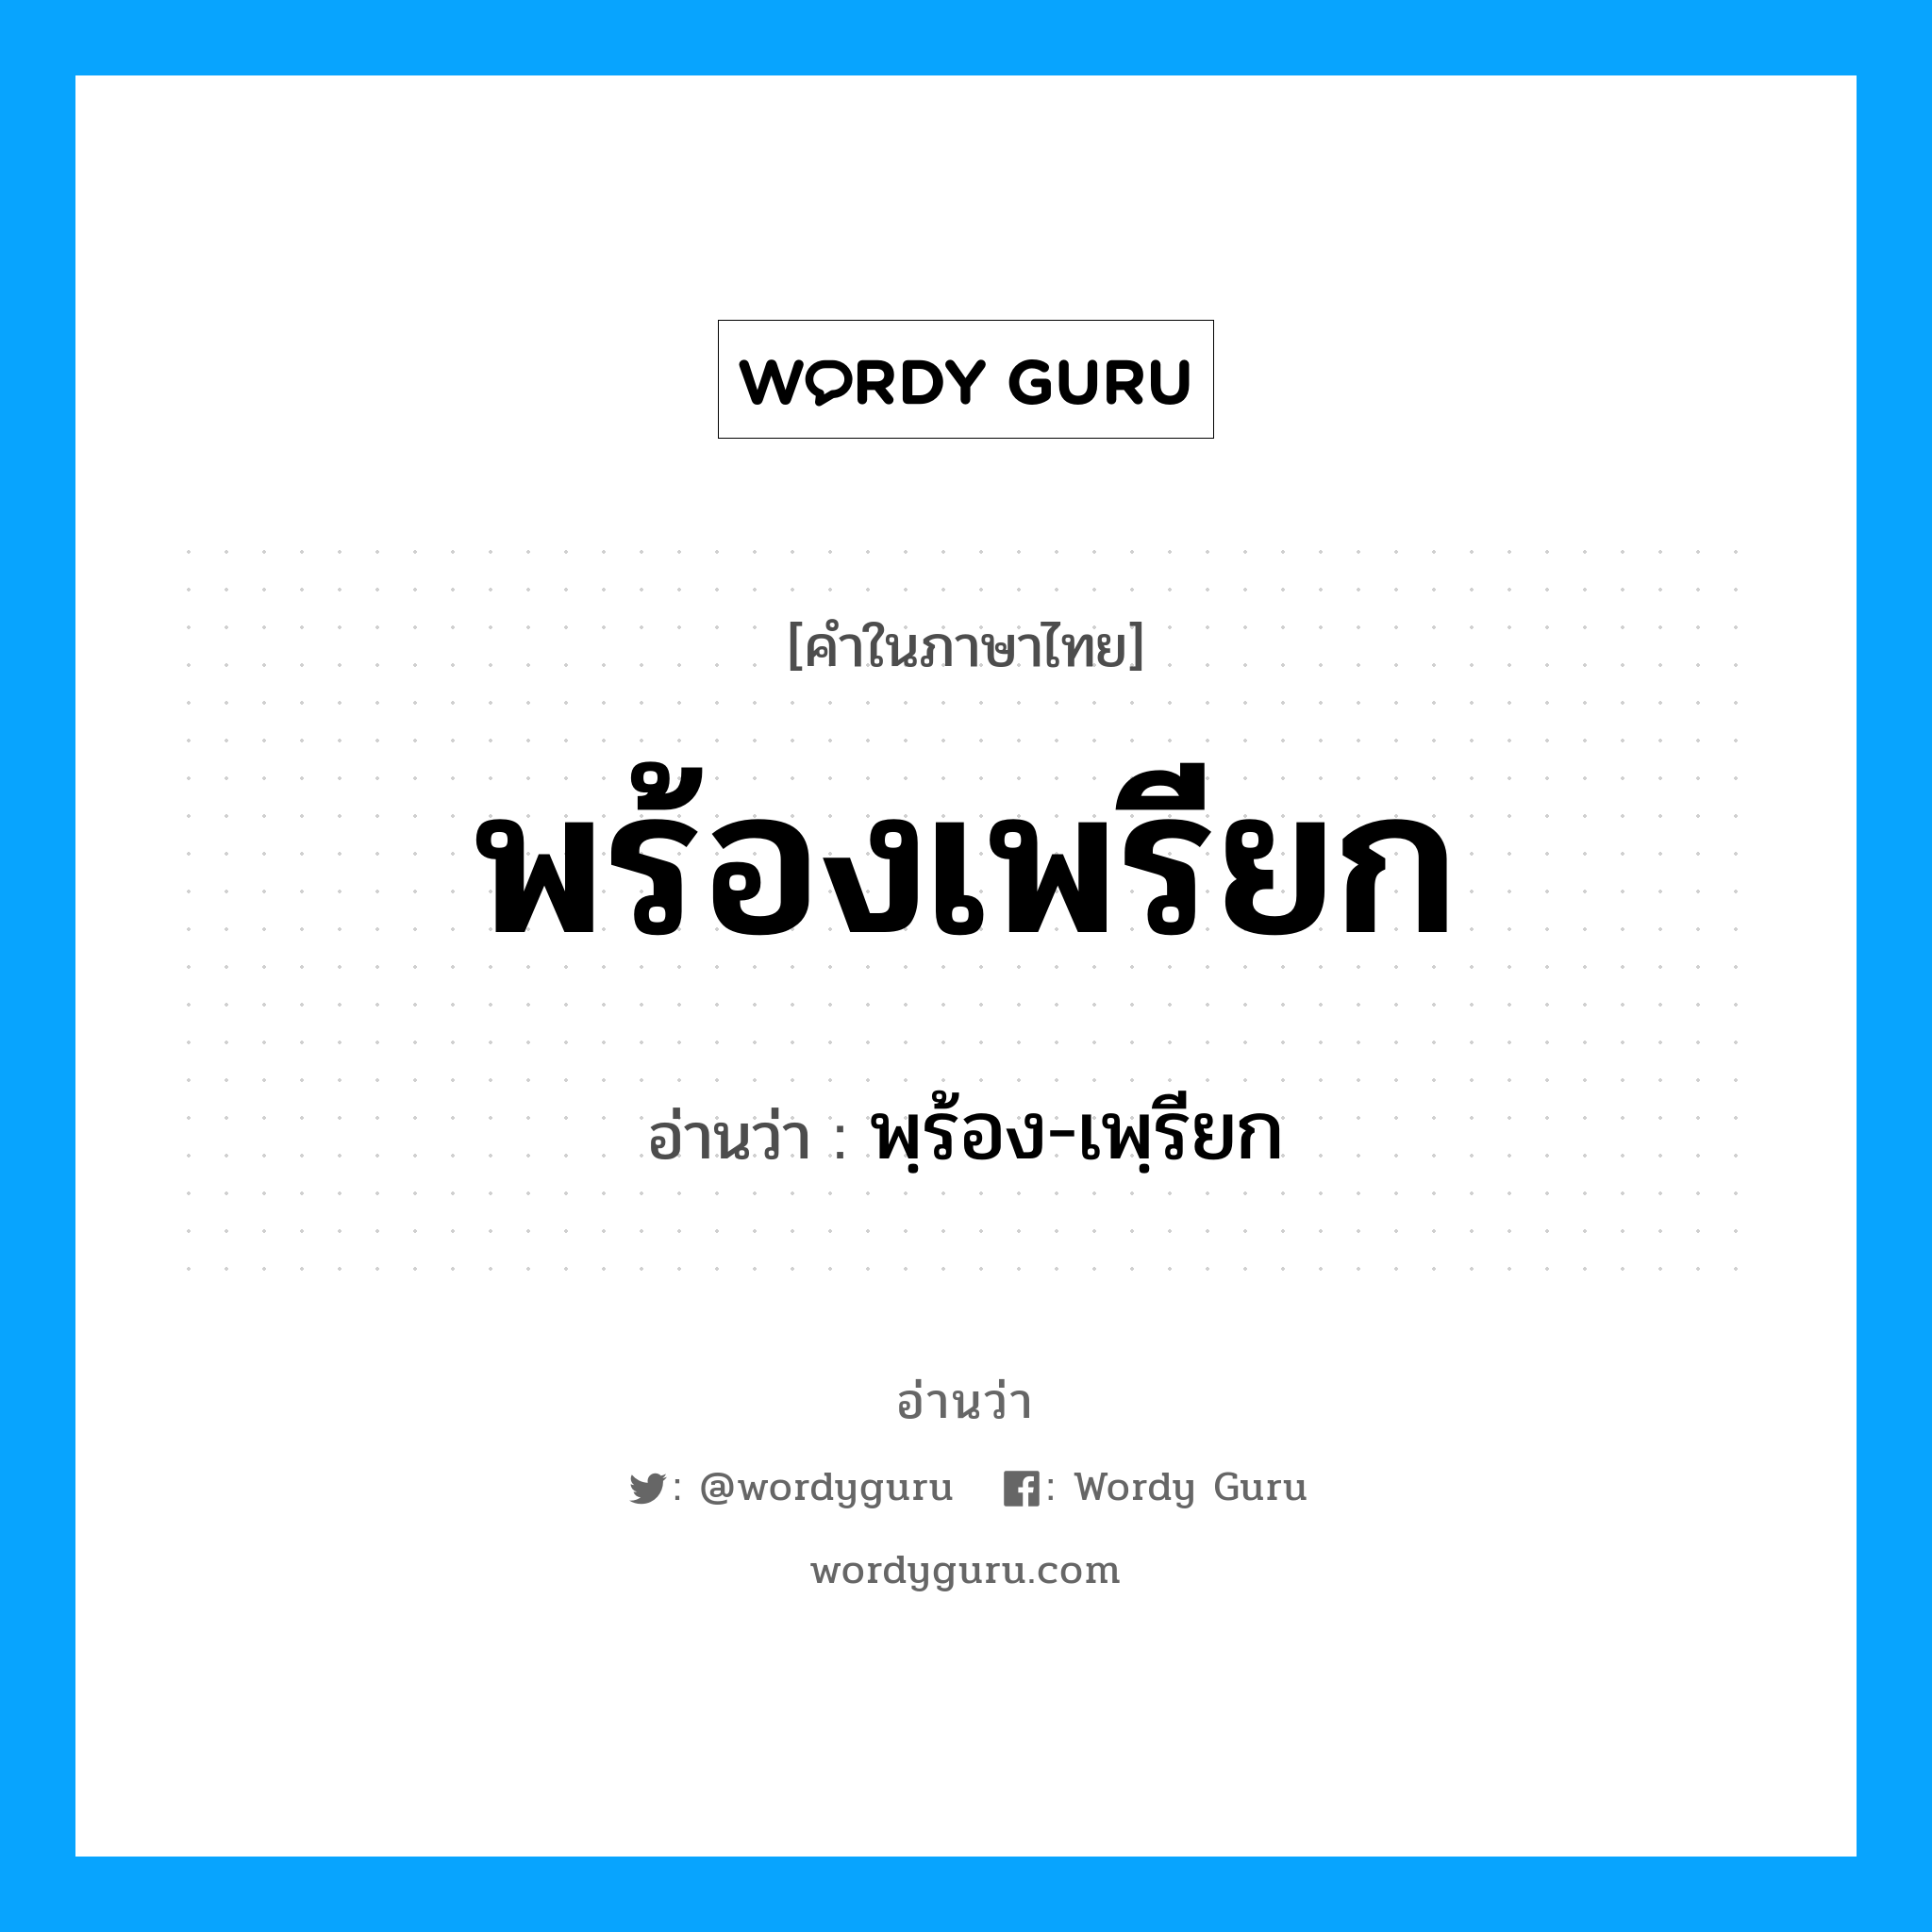 พฺร้อง-เพฺรียก เป็นคำอ่านของคำไหน?, คำในภาษาไทย พฺร้อง-เพฺรียก อ่านว่า พร้องเพรียก